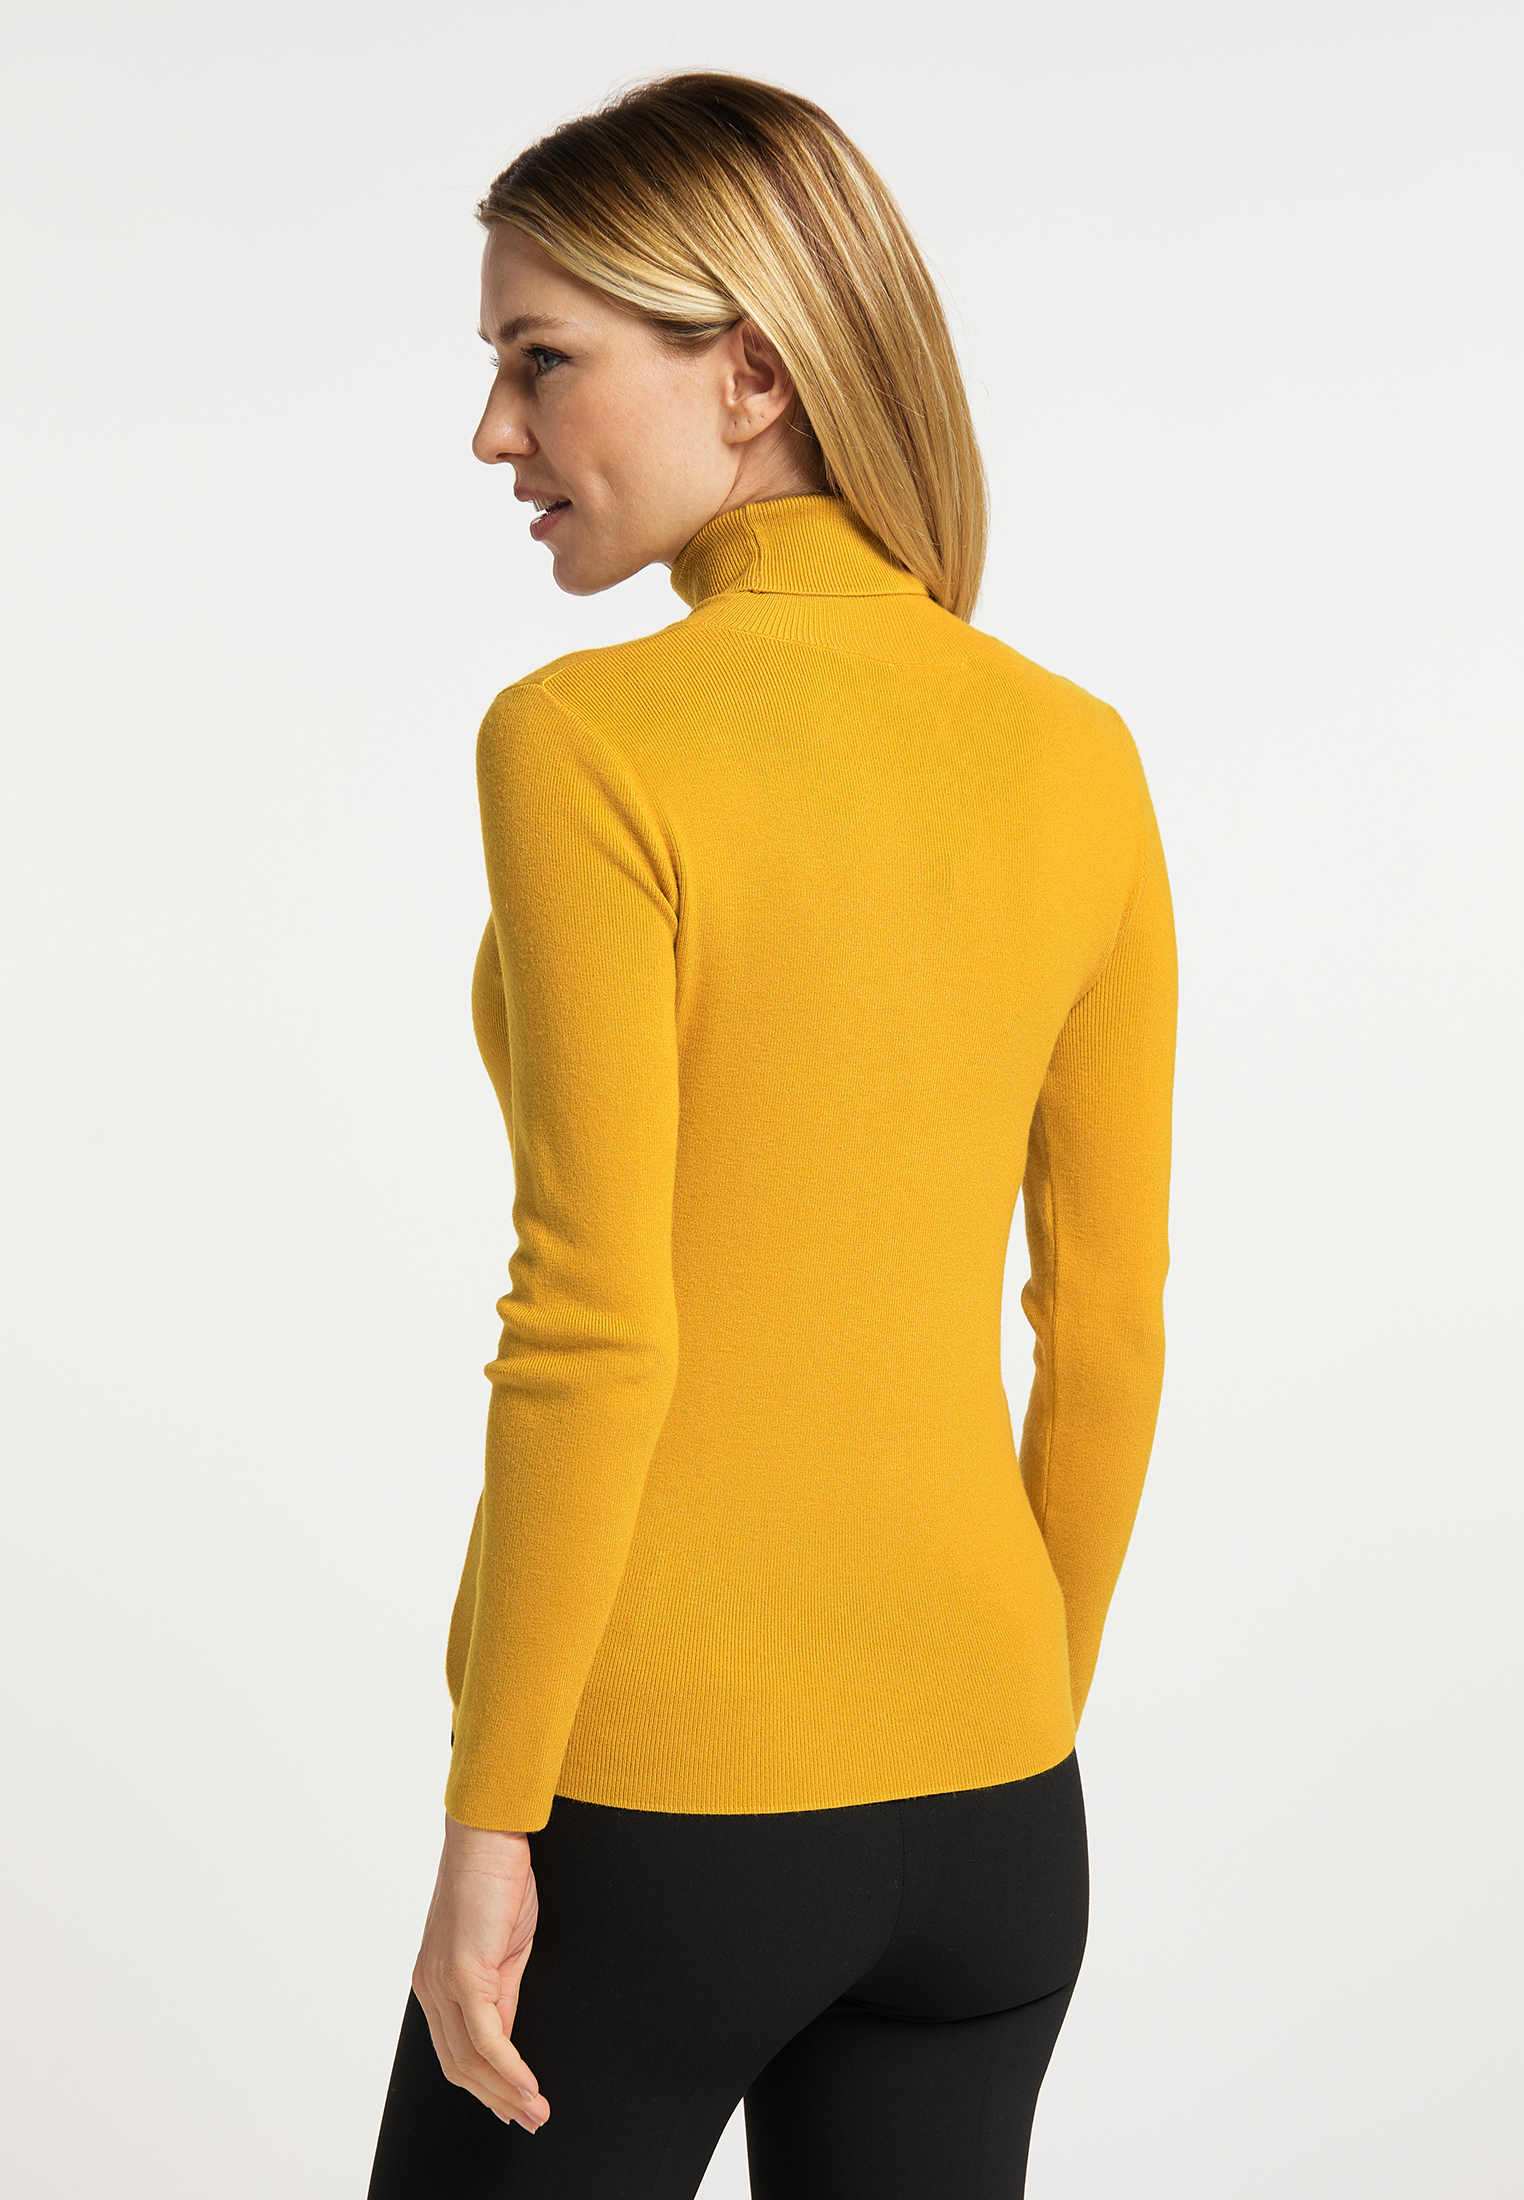 Swetry & dzianina Kobiety Usha Sweter w kolorze Żółtym 